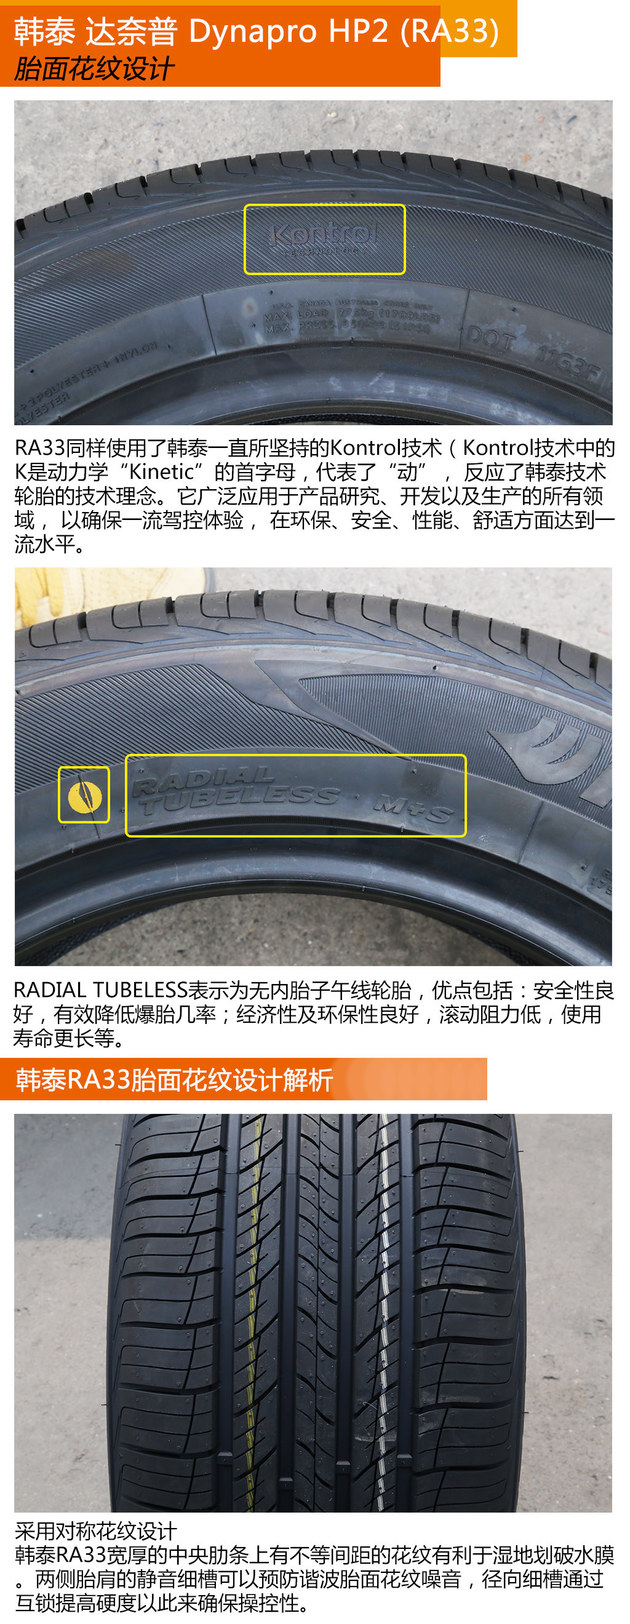 性能均衡 韩泰Dynapro HP2轮胎测试